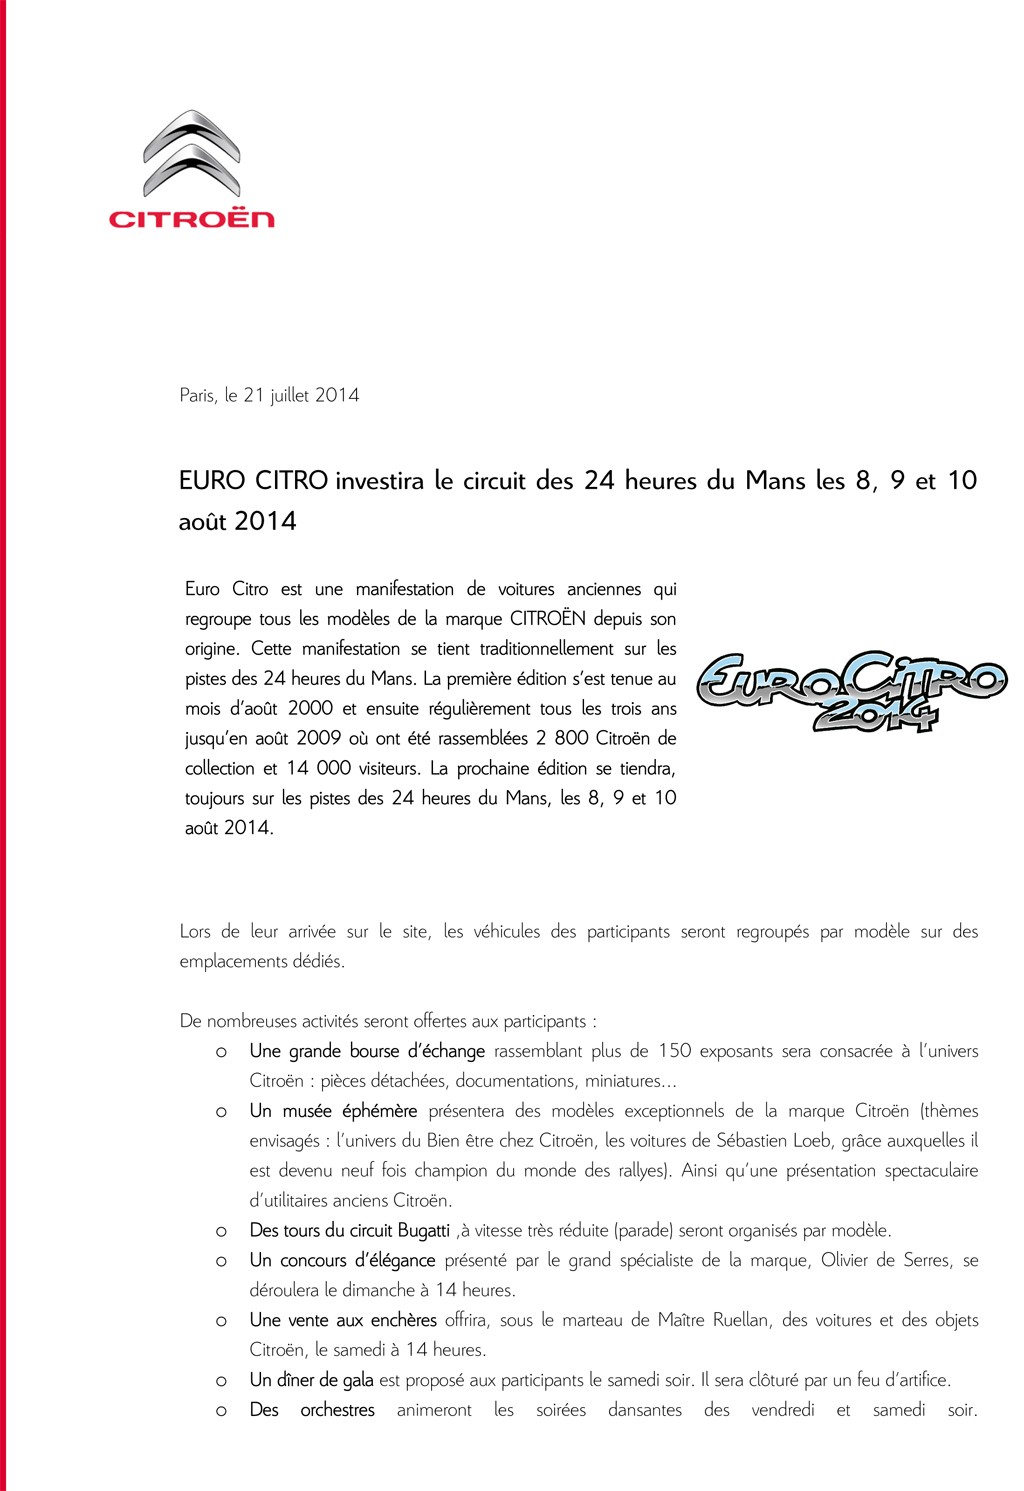 [EVENEMENT] Eurocitro 2014 en préparation - Page 3 Cp_eur10